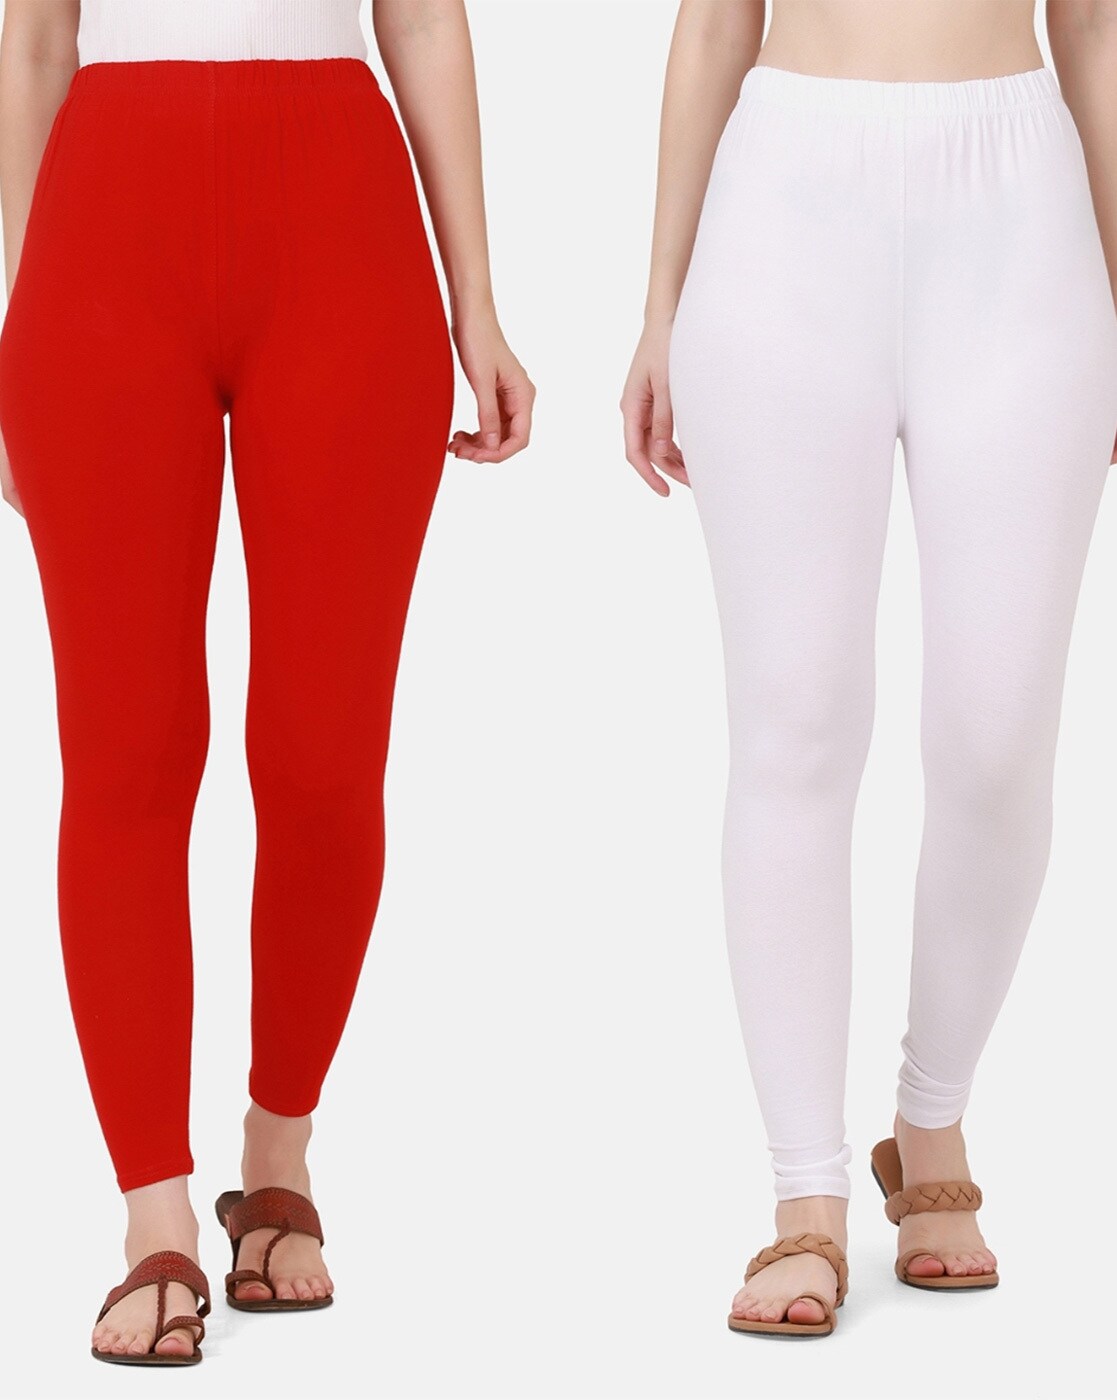 Buy White Leggings for Women by BUYNEWTREND Online